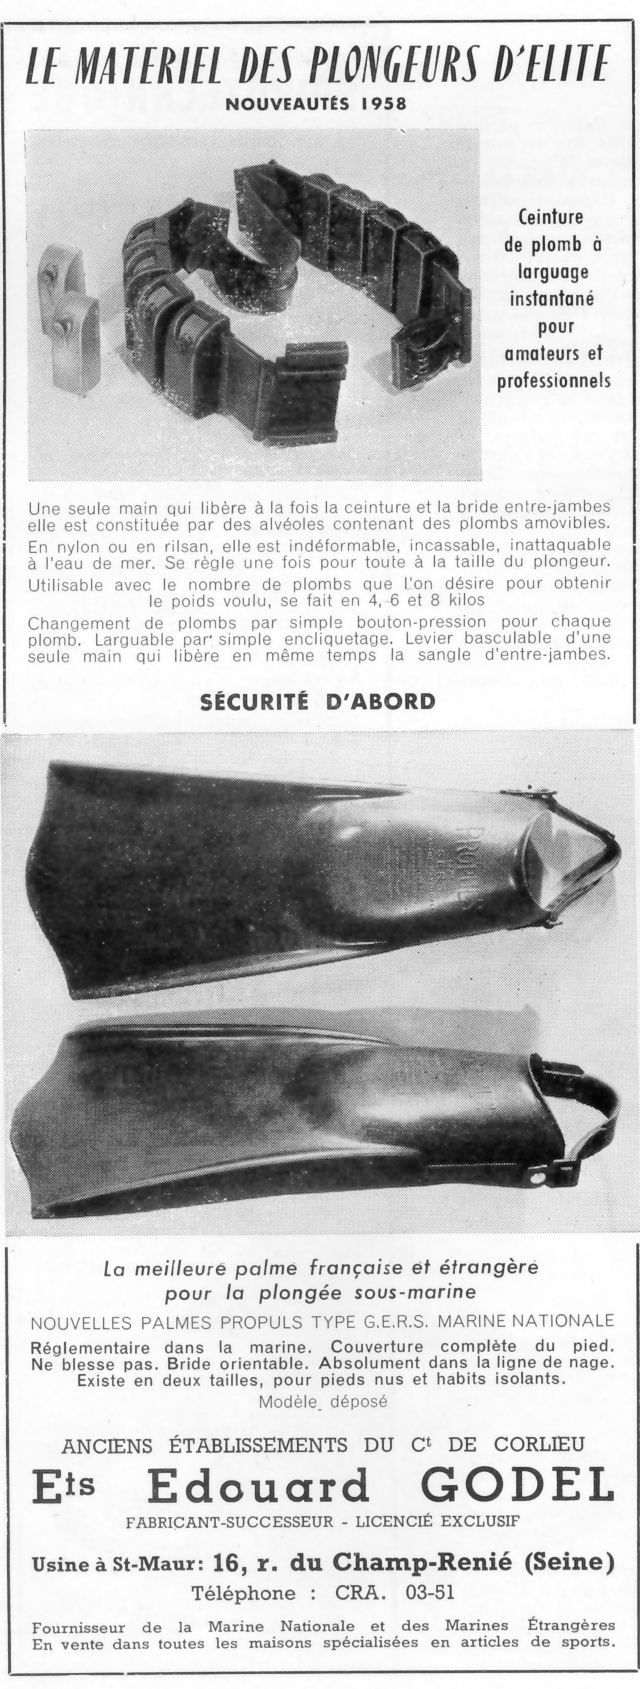 Publicité des Etablisements Edouard Godel dans " L'Aventure sous-marine techniques et exploration" N°21 JUIN-JUILLET 1959. Fonds doc. du musée.